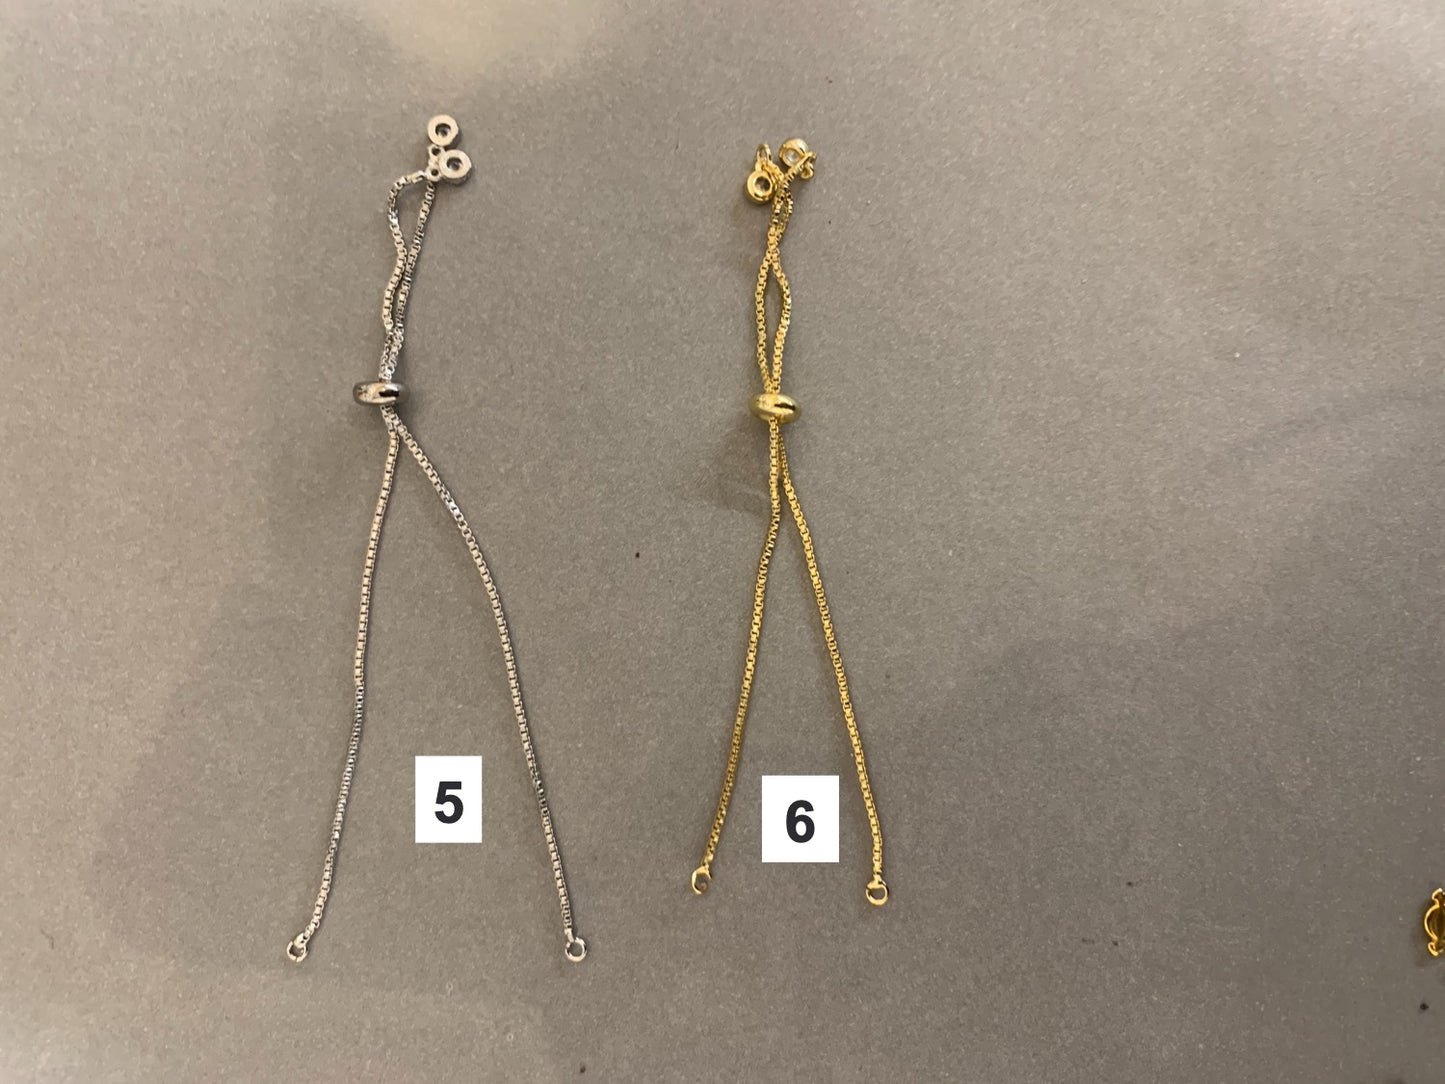 15mm girl or boy connector /qty 2- paquete de 2 del mismo sexo niña o niño